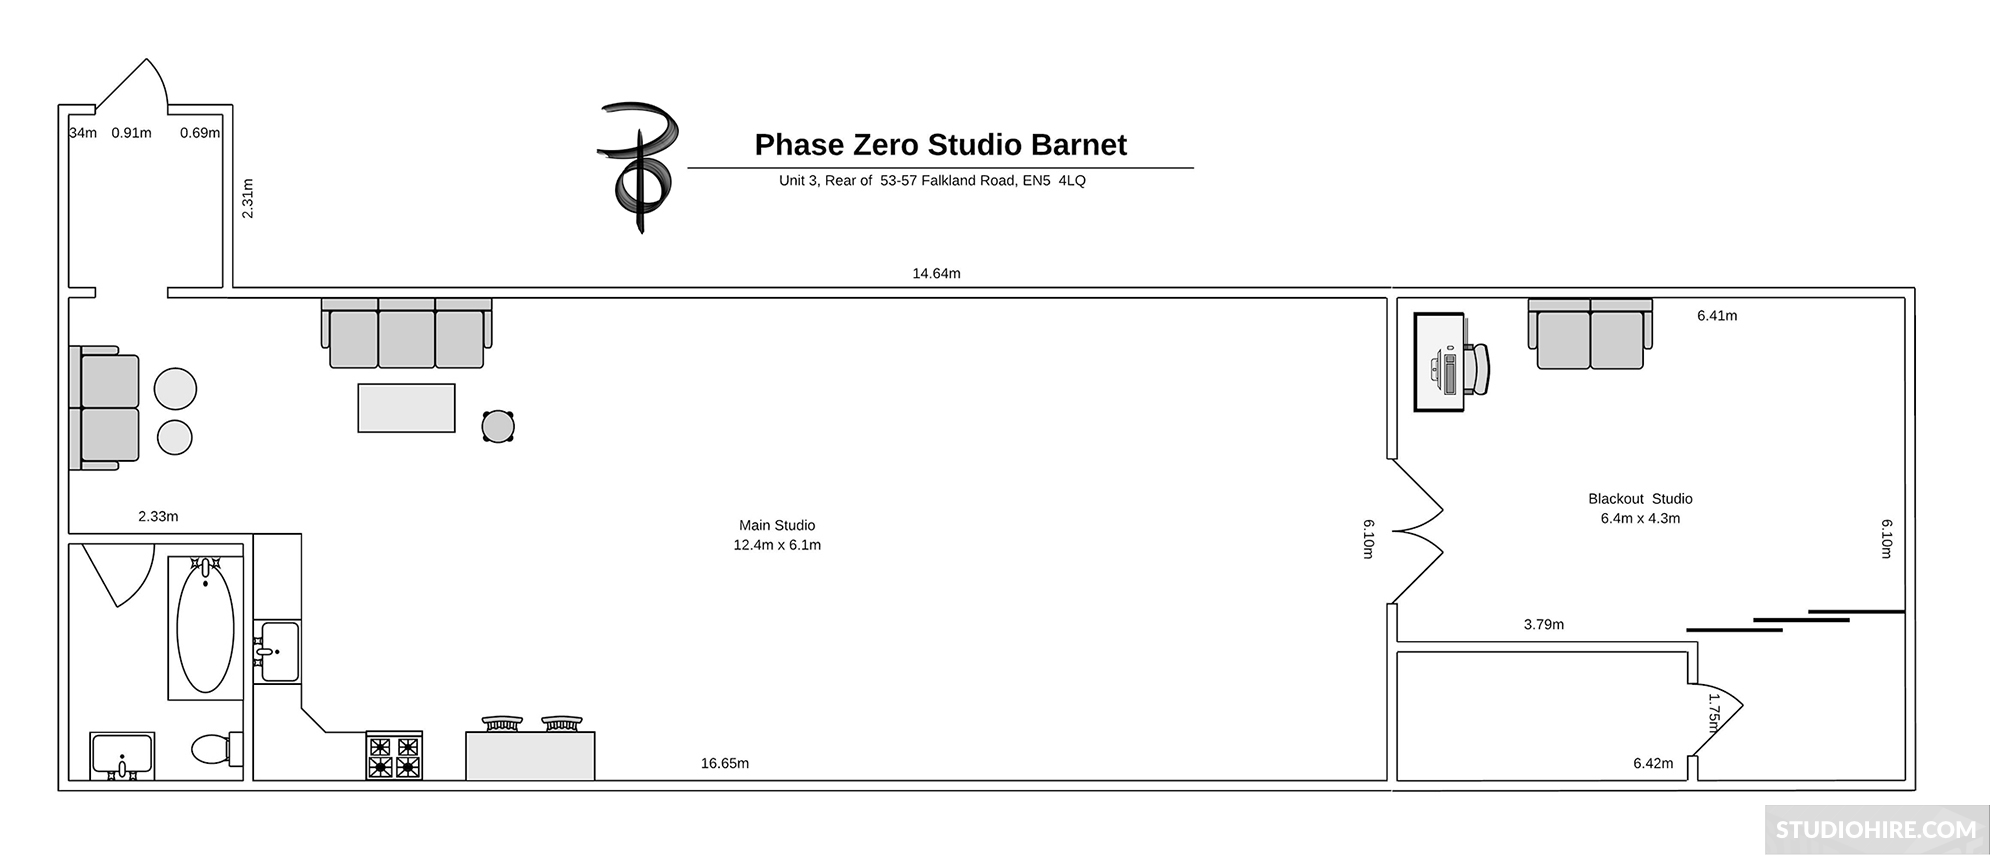 Phase Zero Studio